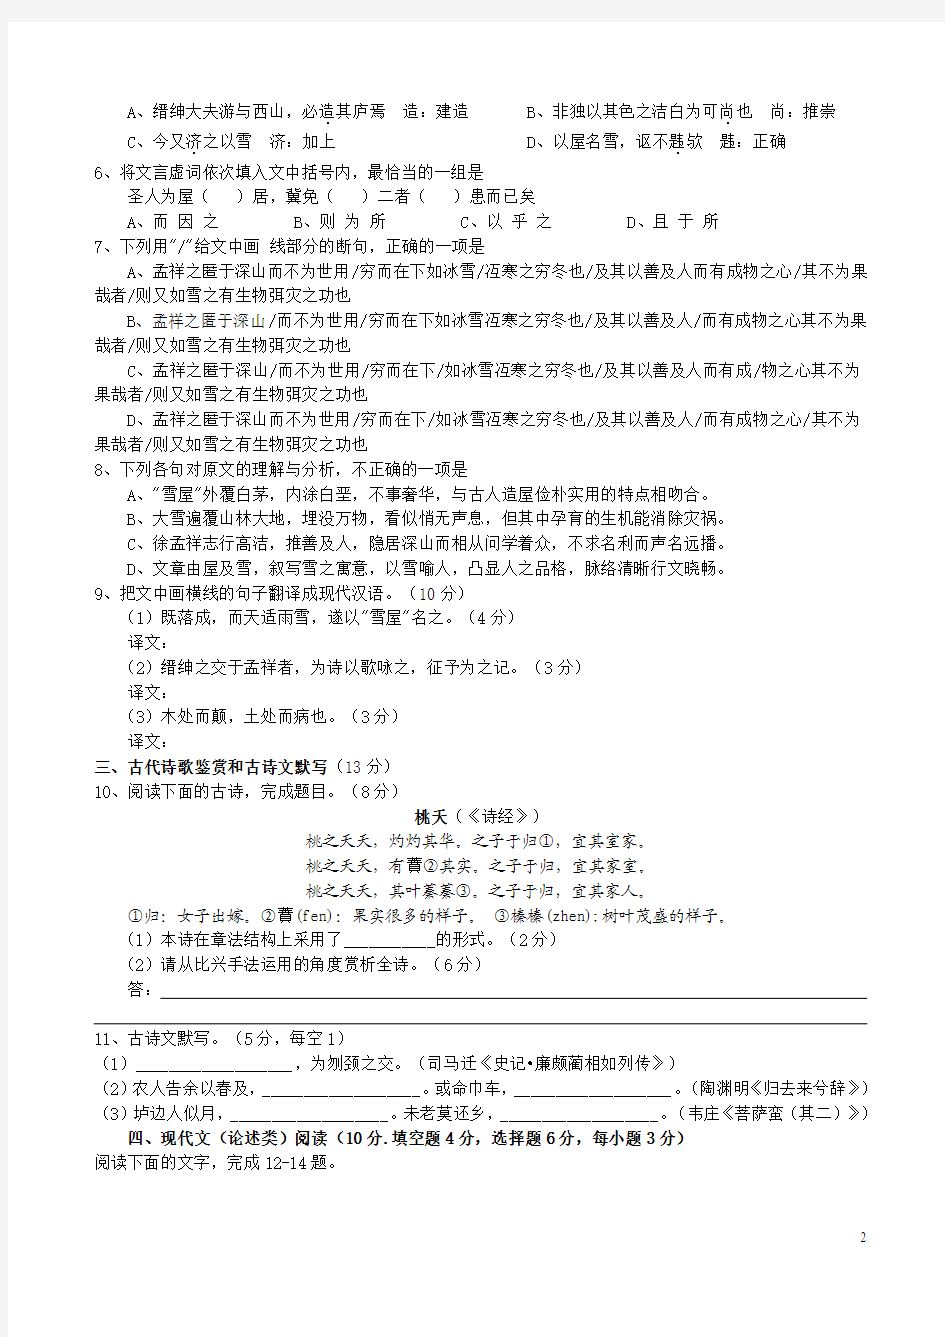 2014年湖南高考语文试题及答案